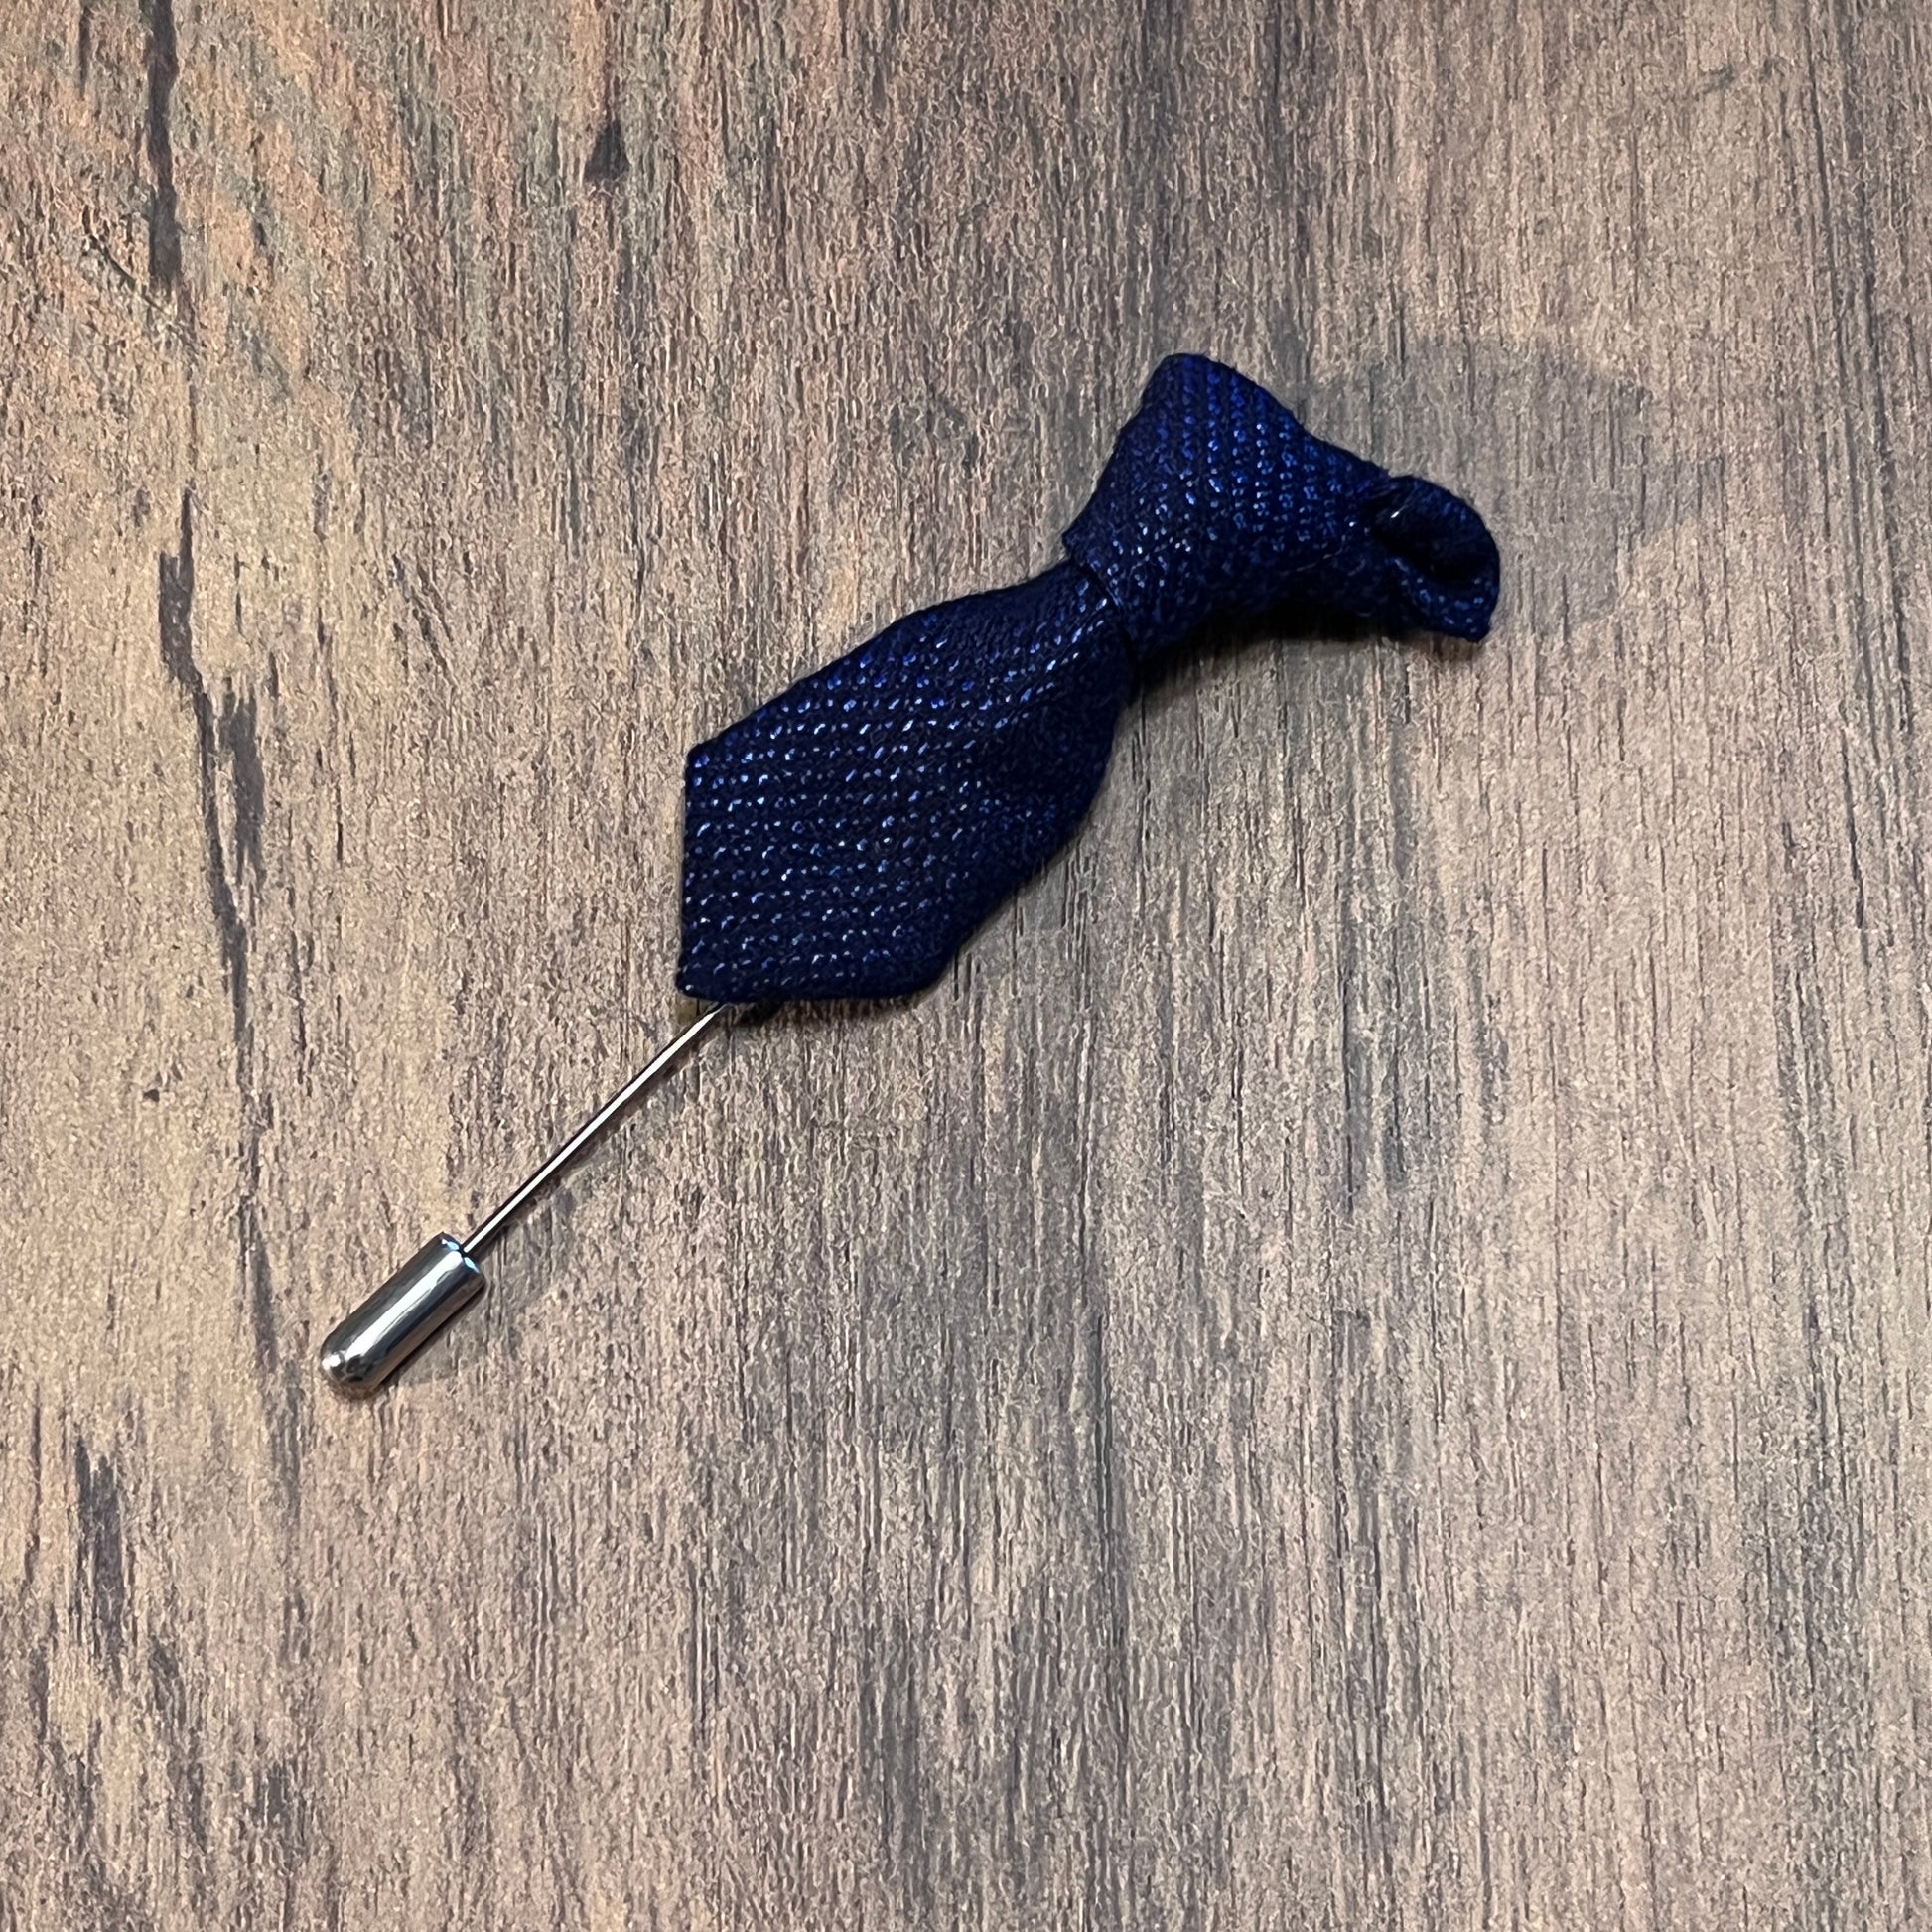 Tasker & Shaw | Luxury Menswear | Navy geometric pattern tie lapel pin